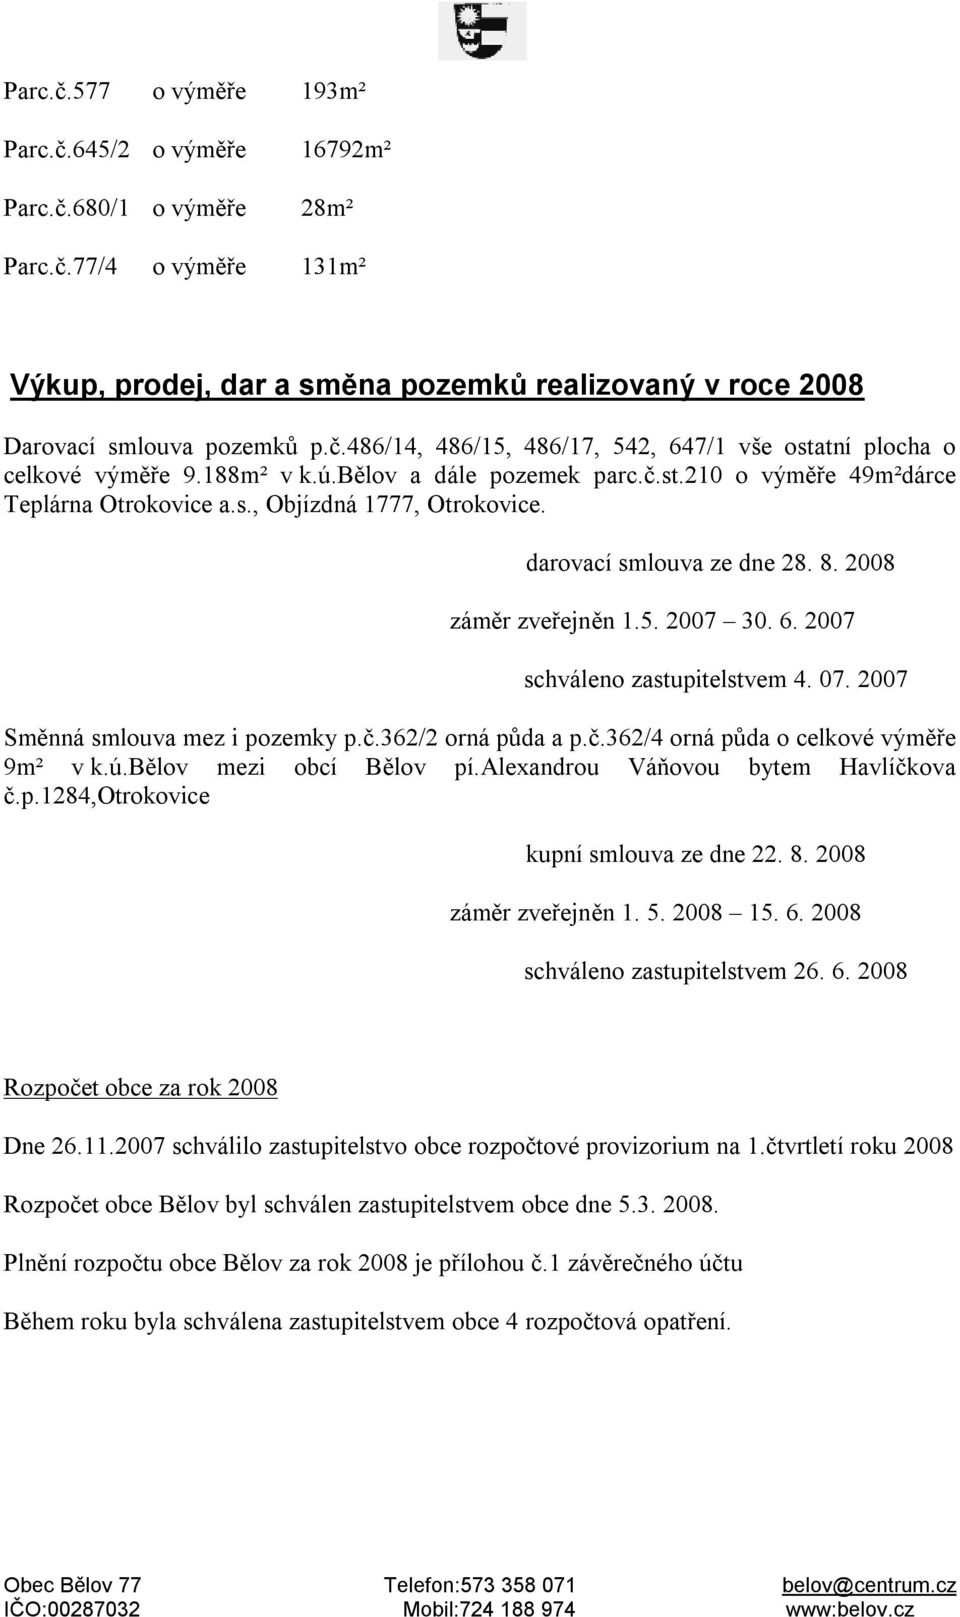 2007 schváleno zastupitelstvem 4. 07. 2007 Směnná smlouva mez i pozemky p.č.362/2 orná půda a p.č.362/4 orná půda o celkové výměře 9m² v k.ú.bělov mezi obcí Bělov pí.